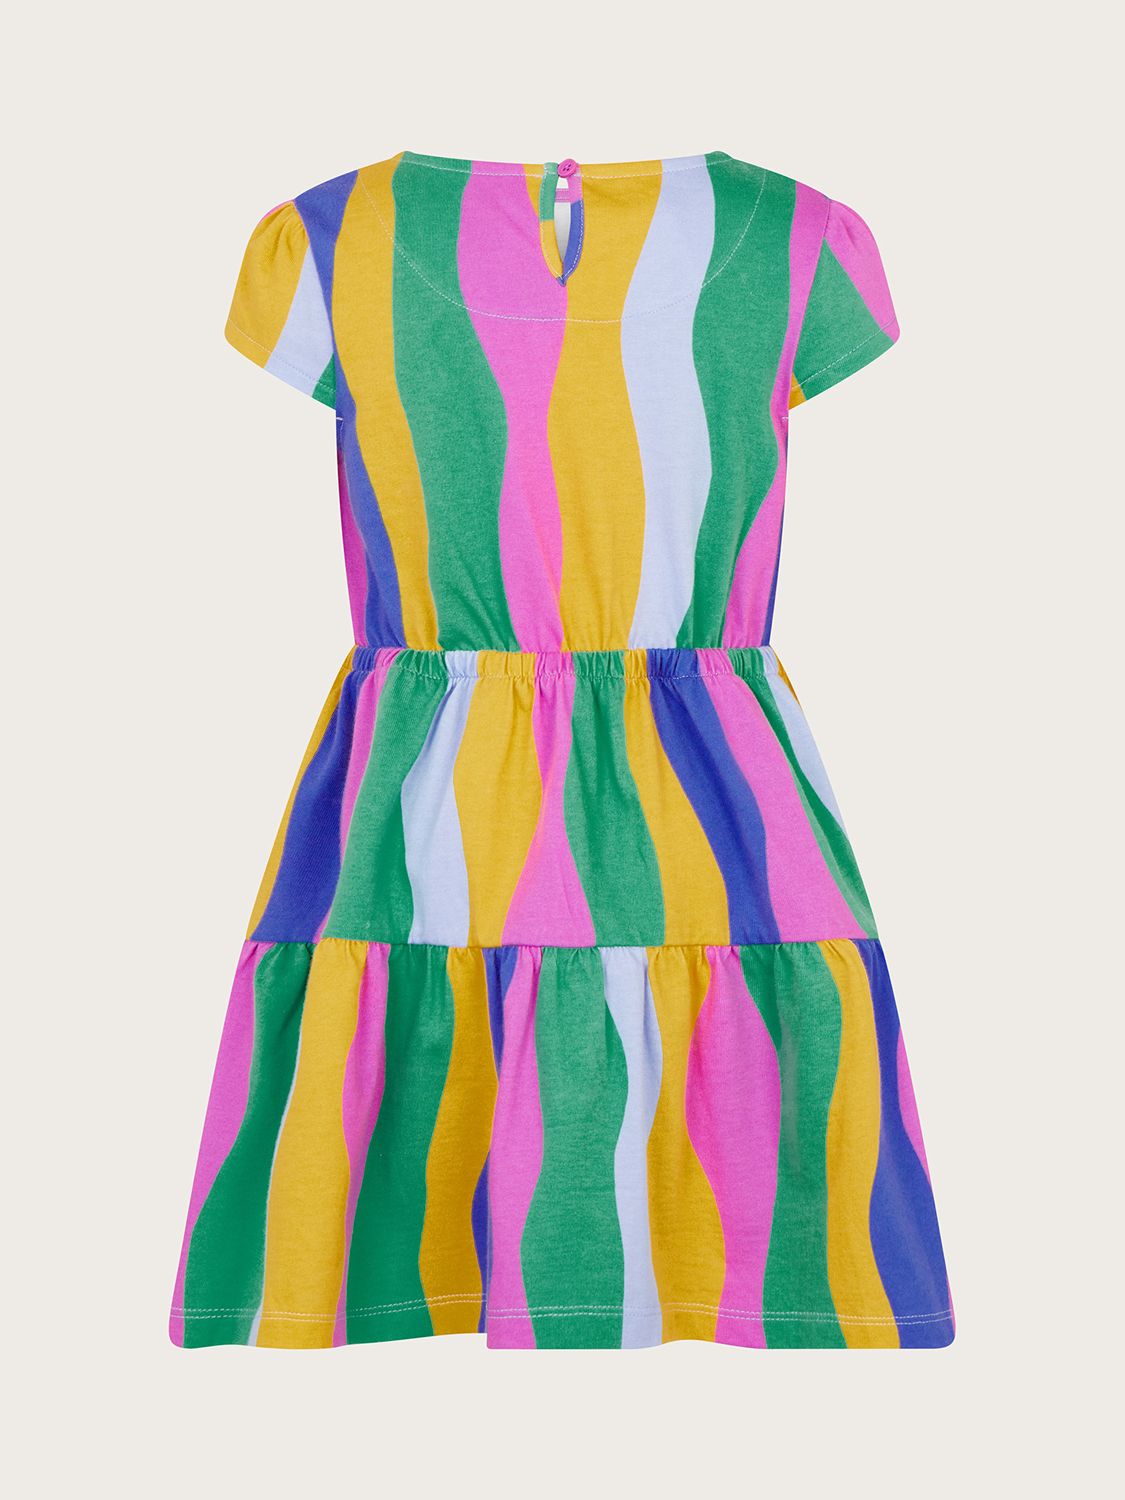 Monsoon Kids' Wavy Stripe Daisy Motif Dress, Multi, 3-4 years